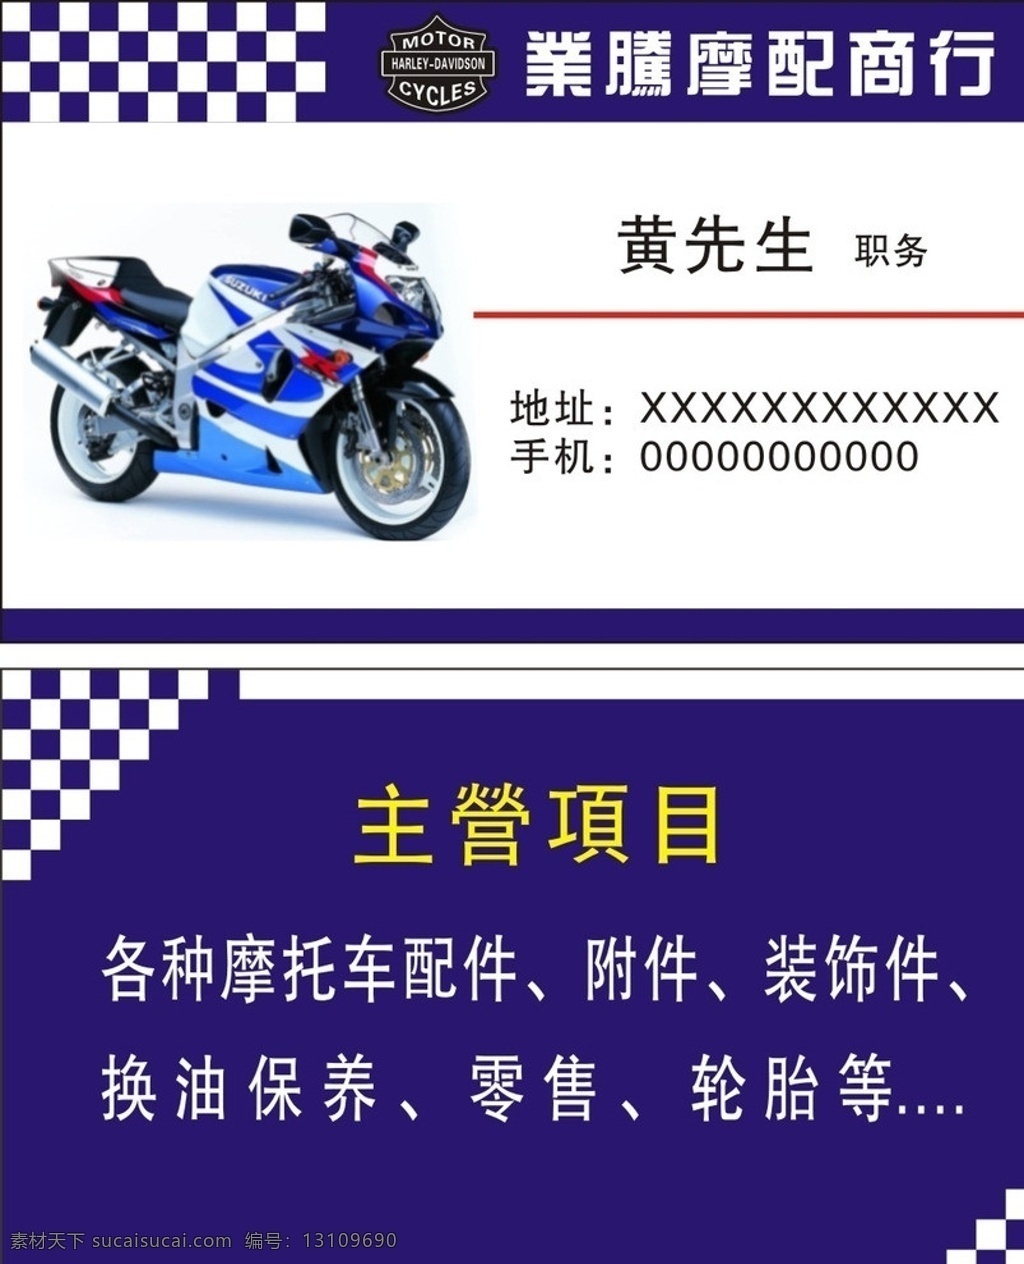 摩托车名片 摩托车广告 摩托车招牌 摩托车卡片 摩托车海报 名片卡片 矢量